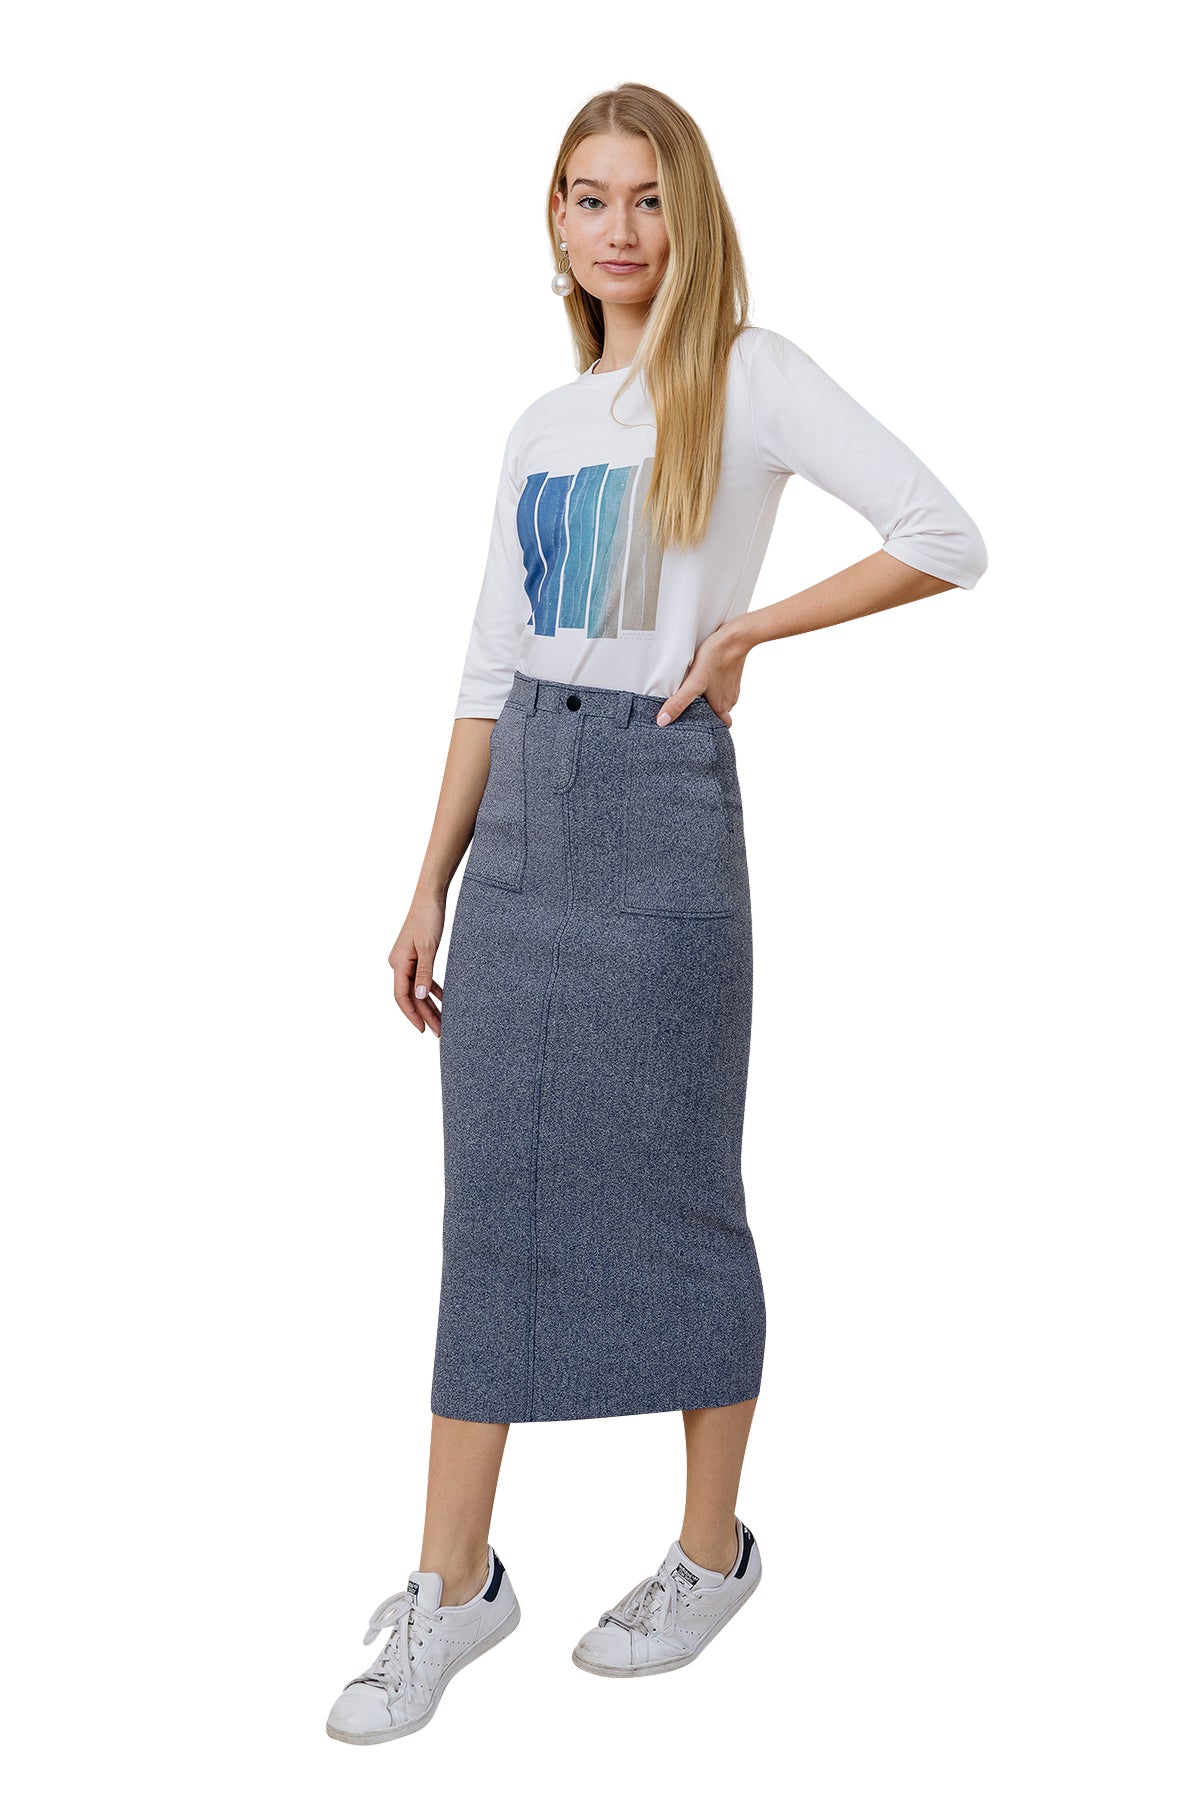 Apparalel Denim Knit Midi Pencil Skirt - Skirts